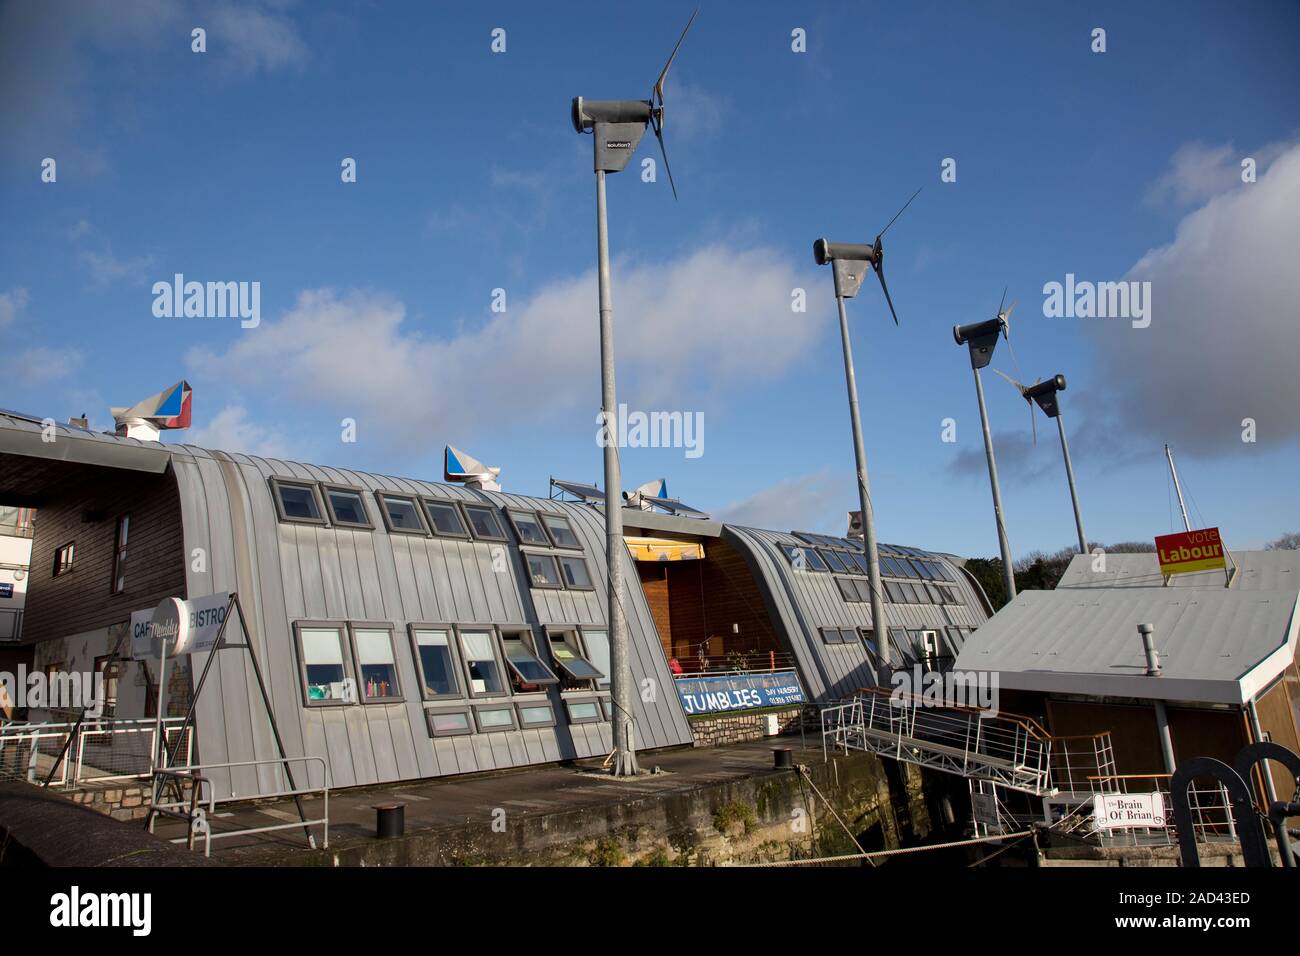 Jubiläum Wharf, einem preisgekrönten Zero Carbon gemischte Nutzung Entwicklung auf einer Brachfläche indistrial Website, bestehend aus einem Restaurant, Babysitting-Service, Bar/Cafe, Büros, live-a-Boa Stockfoto